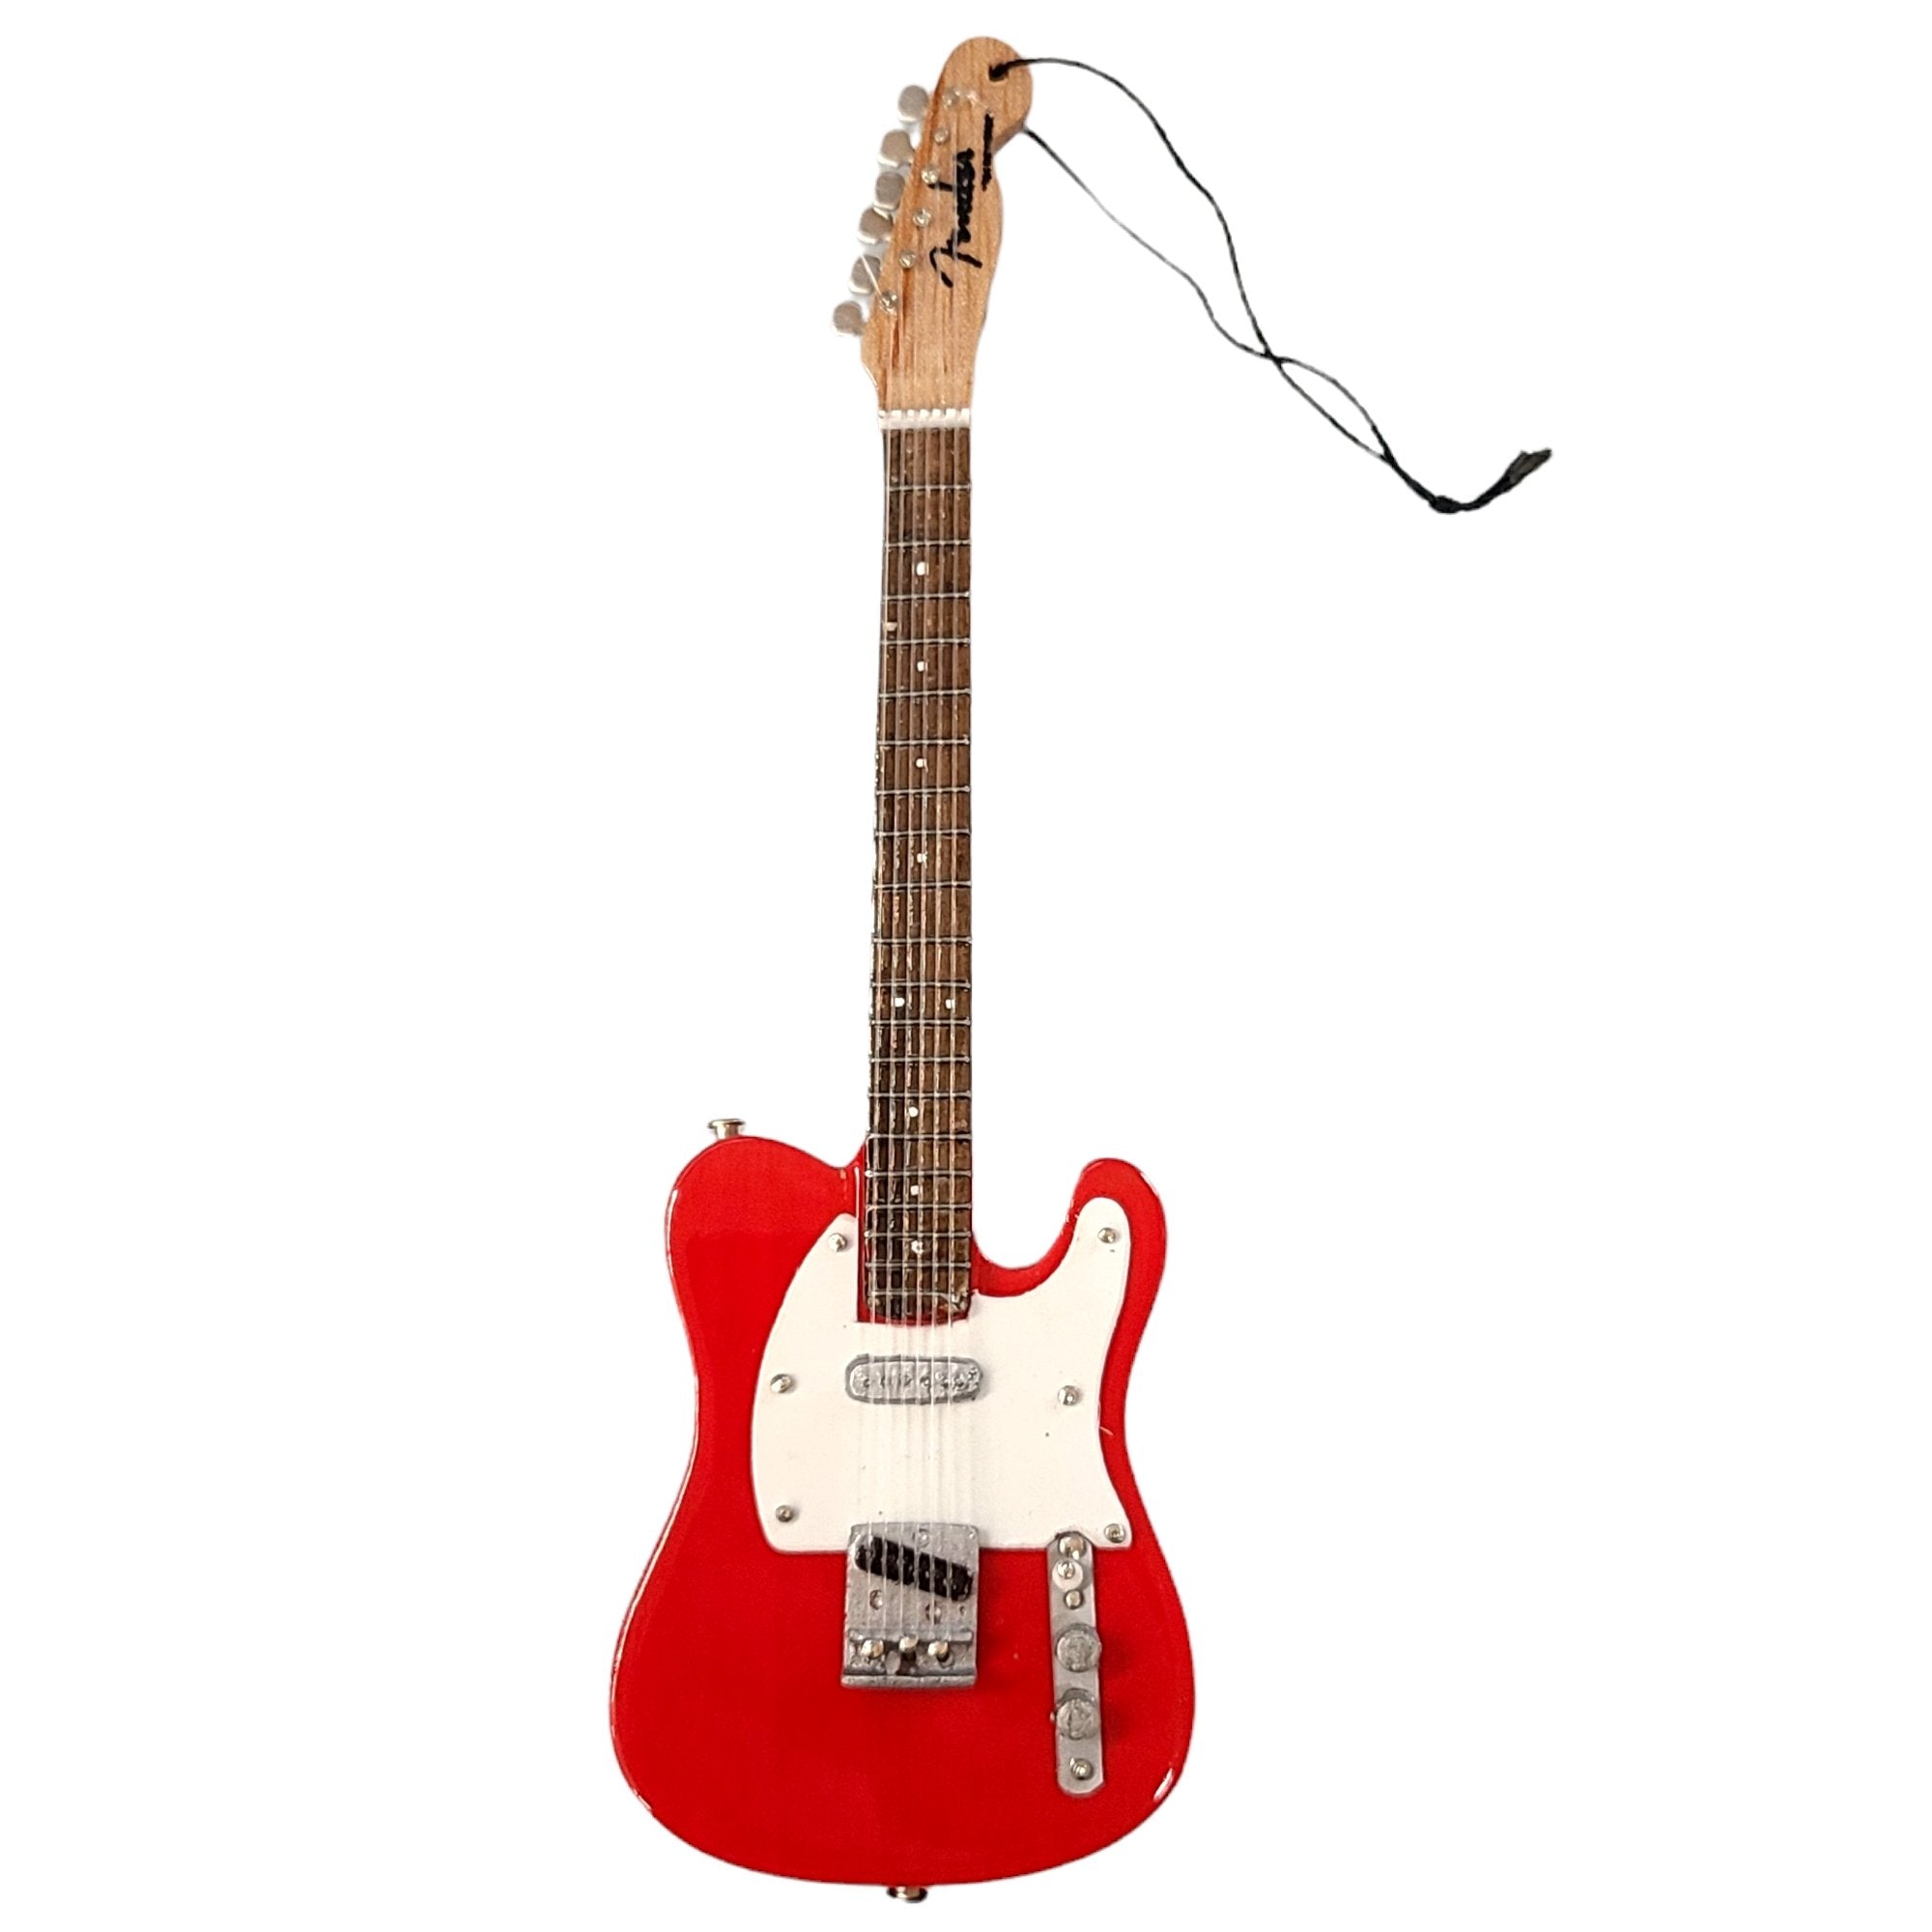 Axe Heaven 6" Red Fender Tele Mini Guitar Replica Ornament